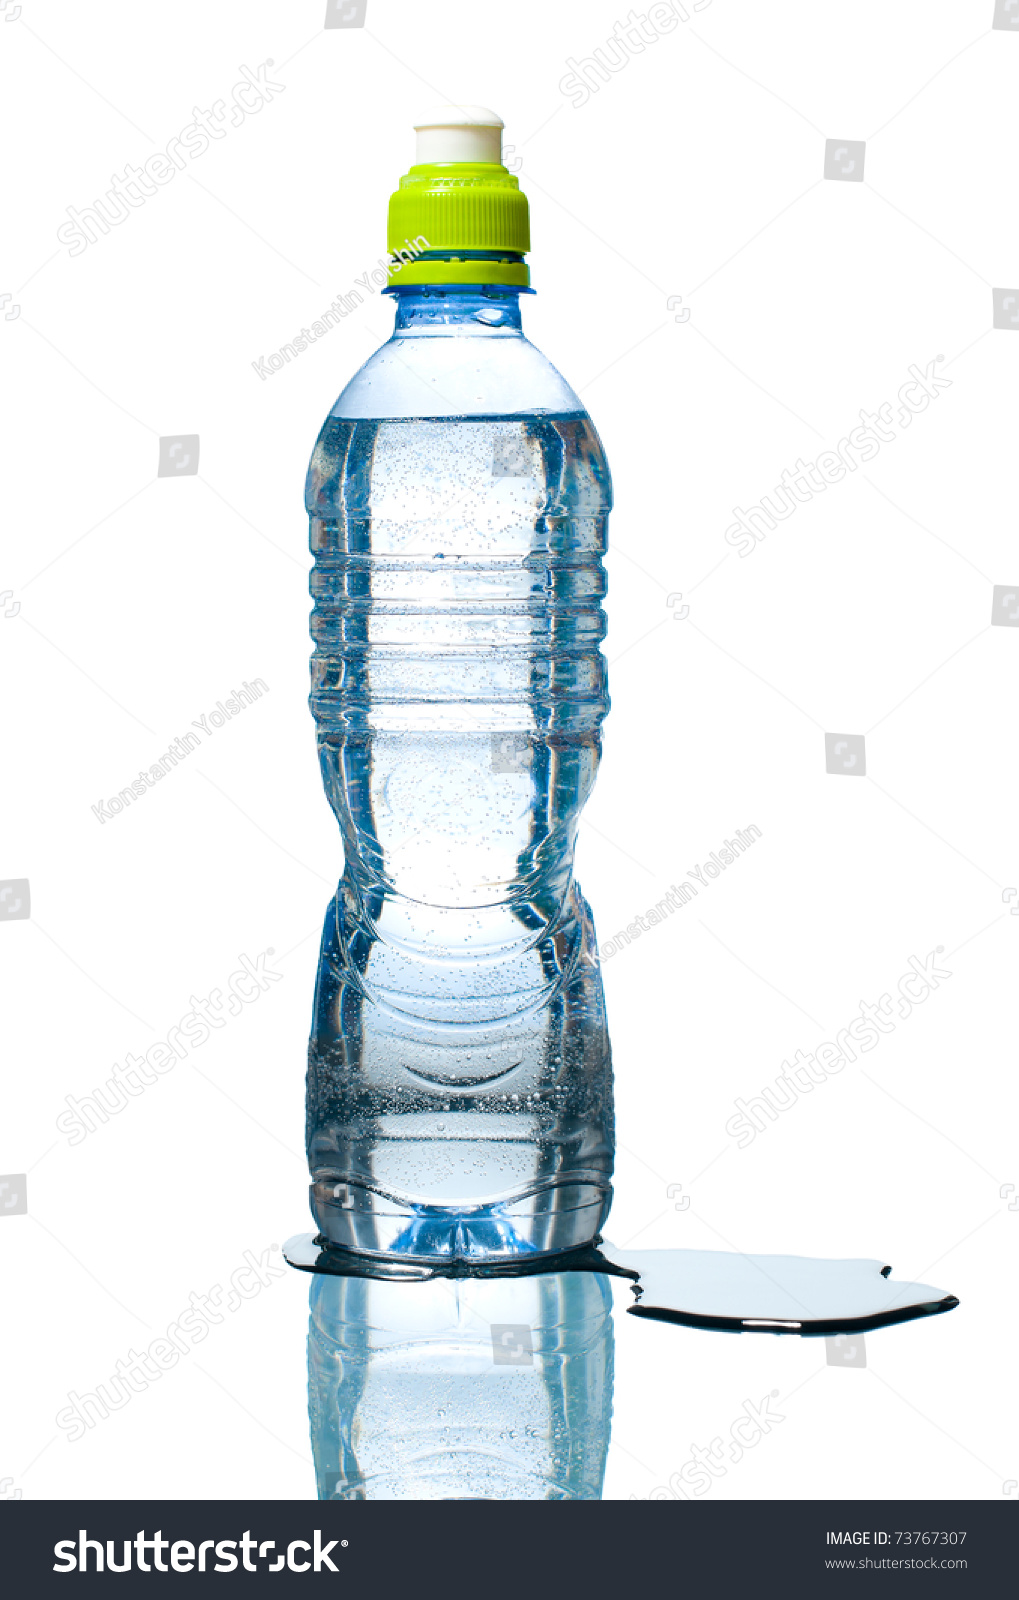 Почему вода вытекает из отверстий. Пластмассовая бутылка с дыркой. Дырявая бутылка с водой. Вода из бутылки. Бутылка с дырками и водой.